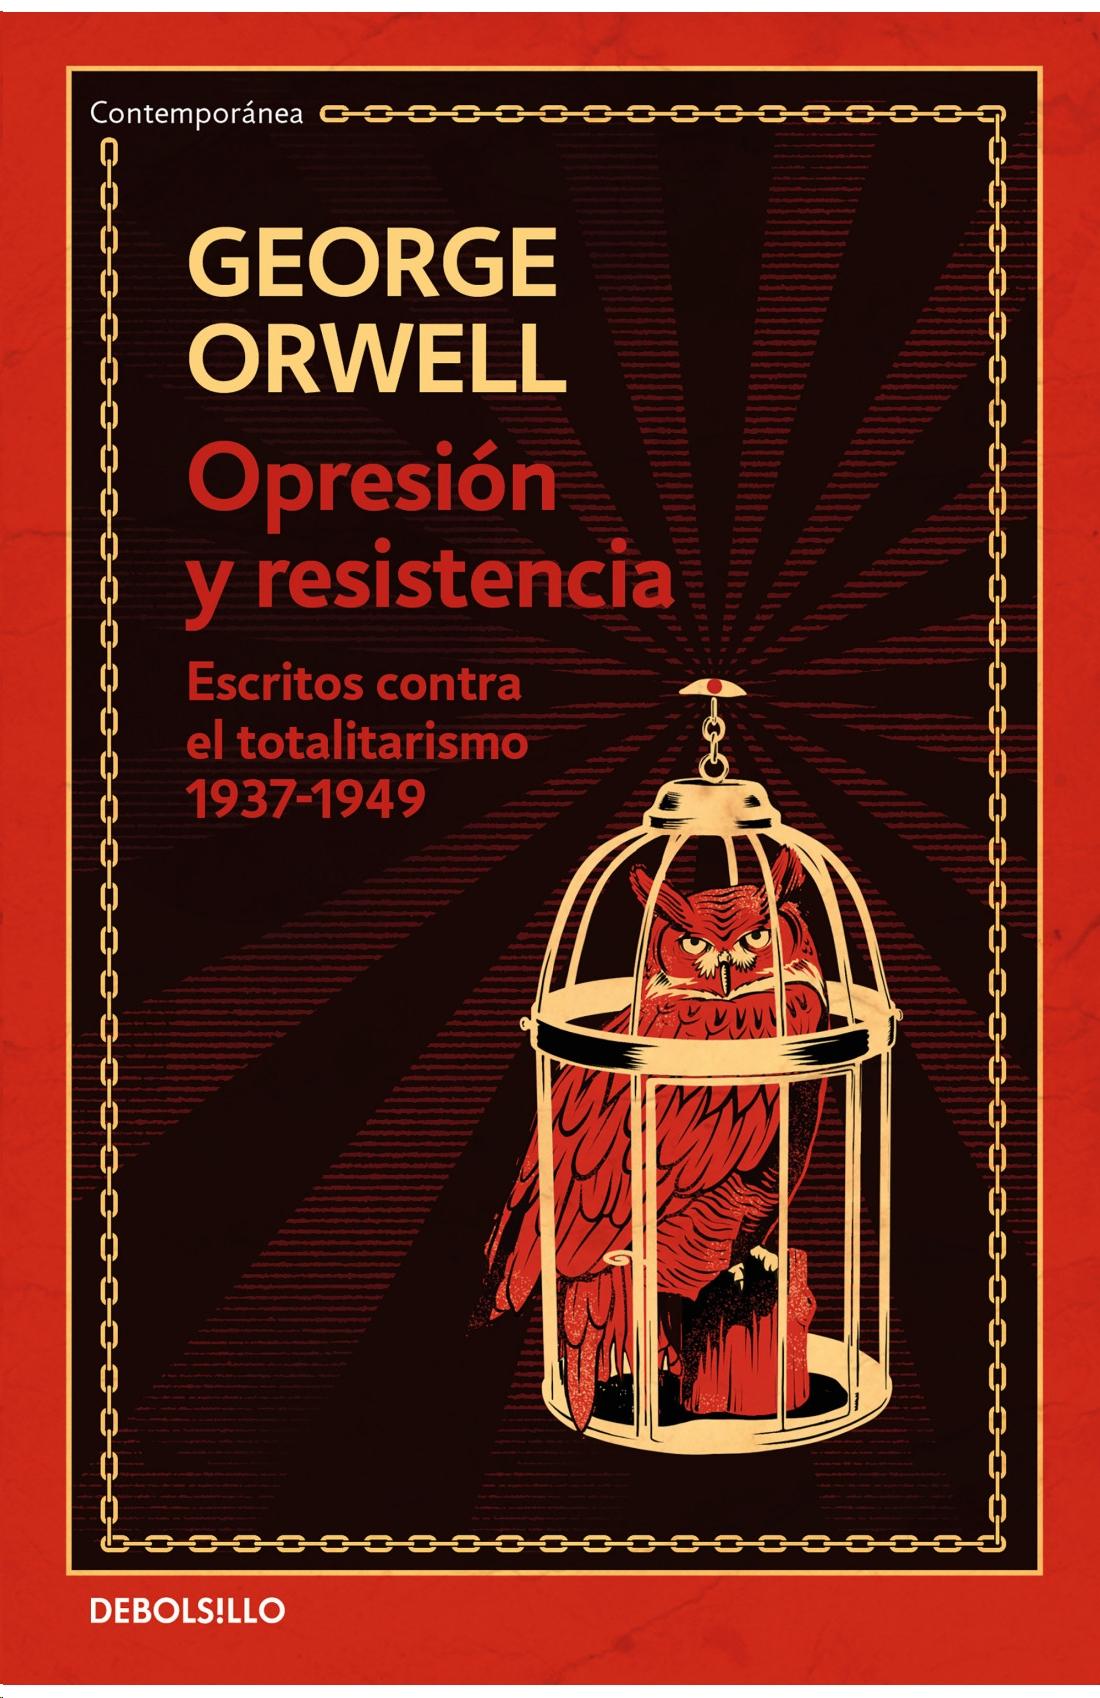 Opresión y resistencia "Escritos contra el totalitarismo 1937-1949". 